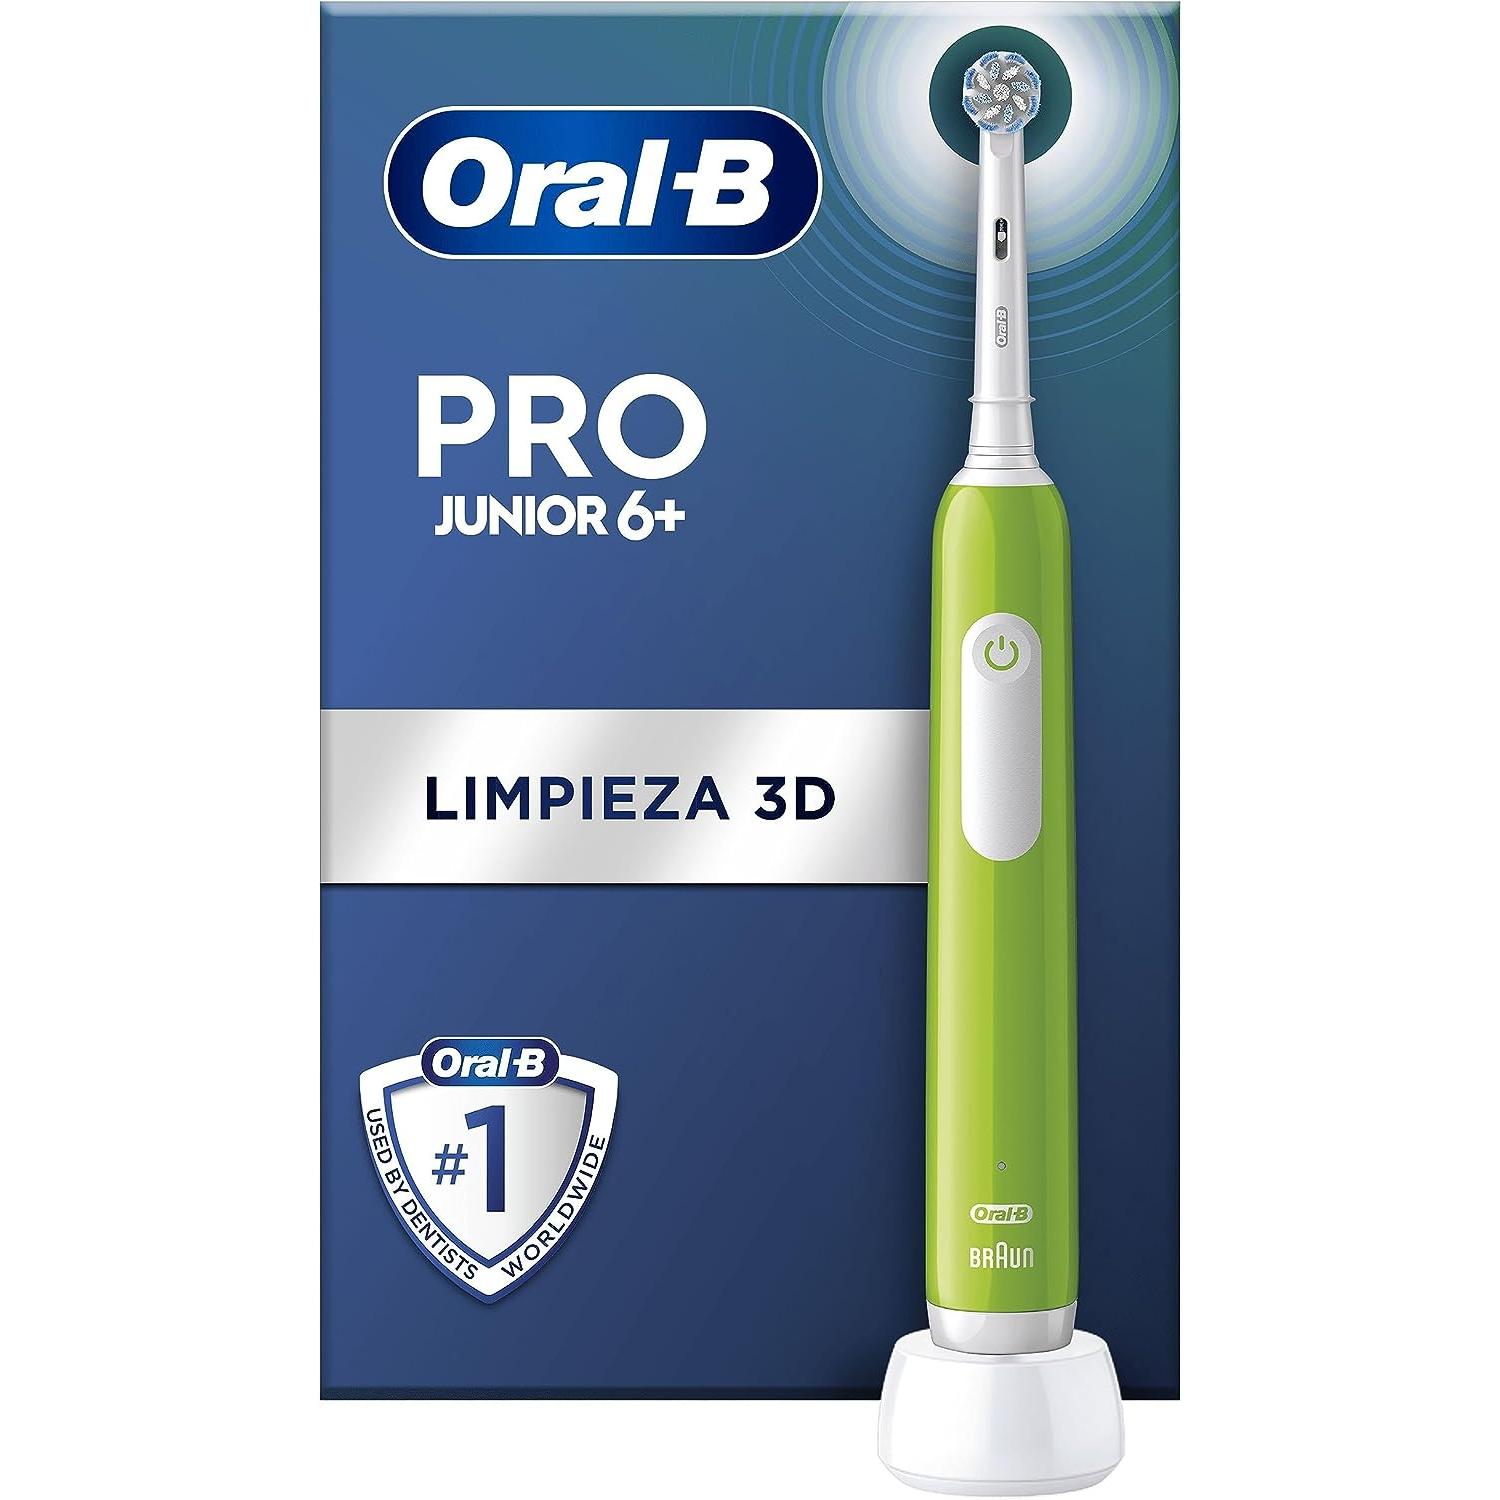 Oral-B - Oral-B Pro Junior cepillo de dientes eléctrico, 1 mango verde, 1 cabezal,  apto para niños mayores de 6 años